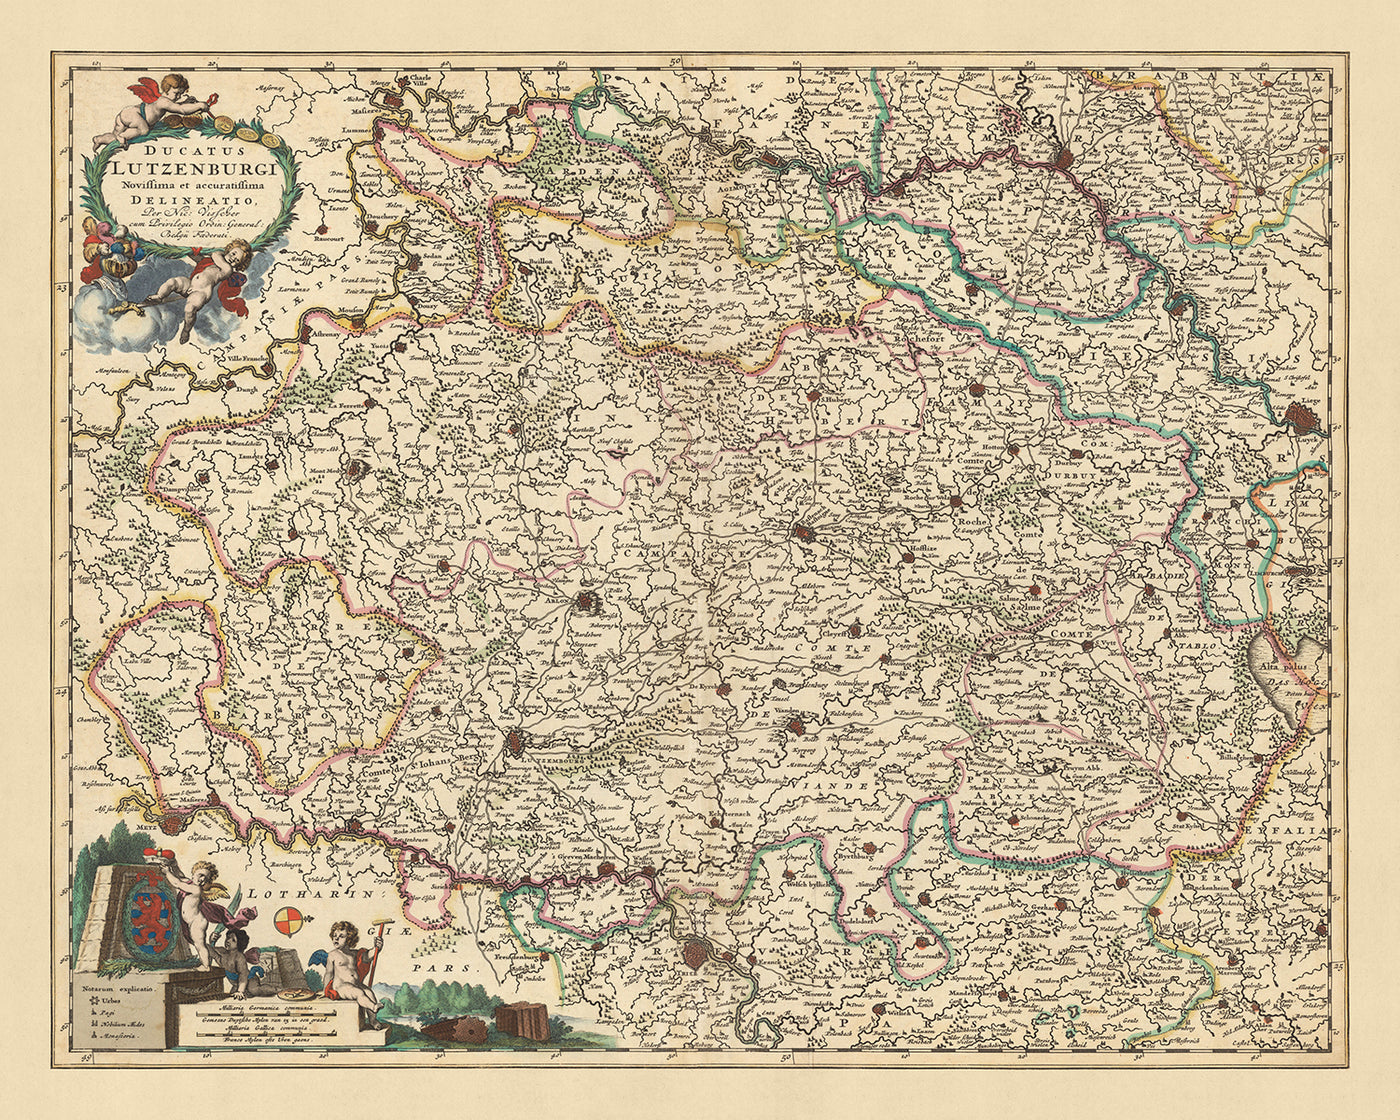 Ancienne carte du duché de Luxembourg par Visscher, 1690 : Liège, Namur, Metz, Trèves, Parc régional des Ardennes